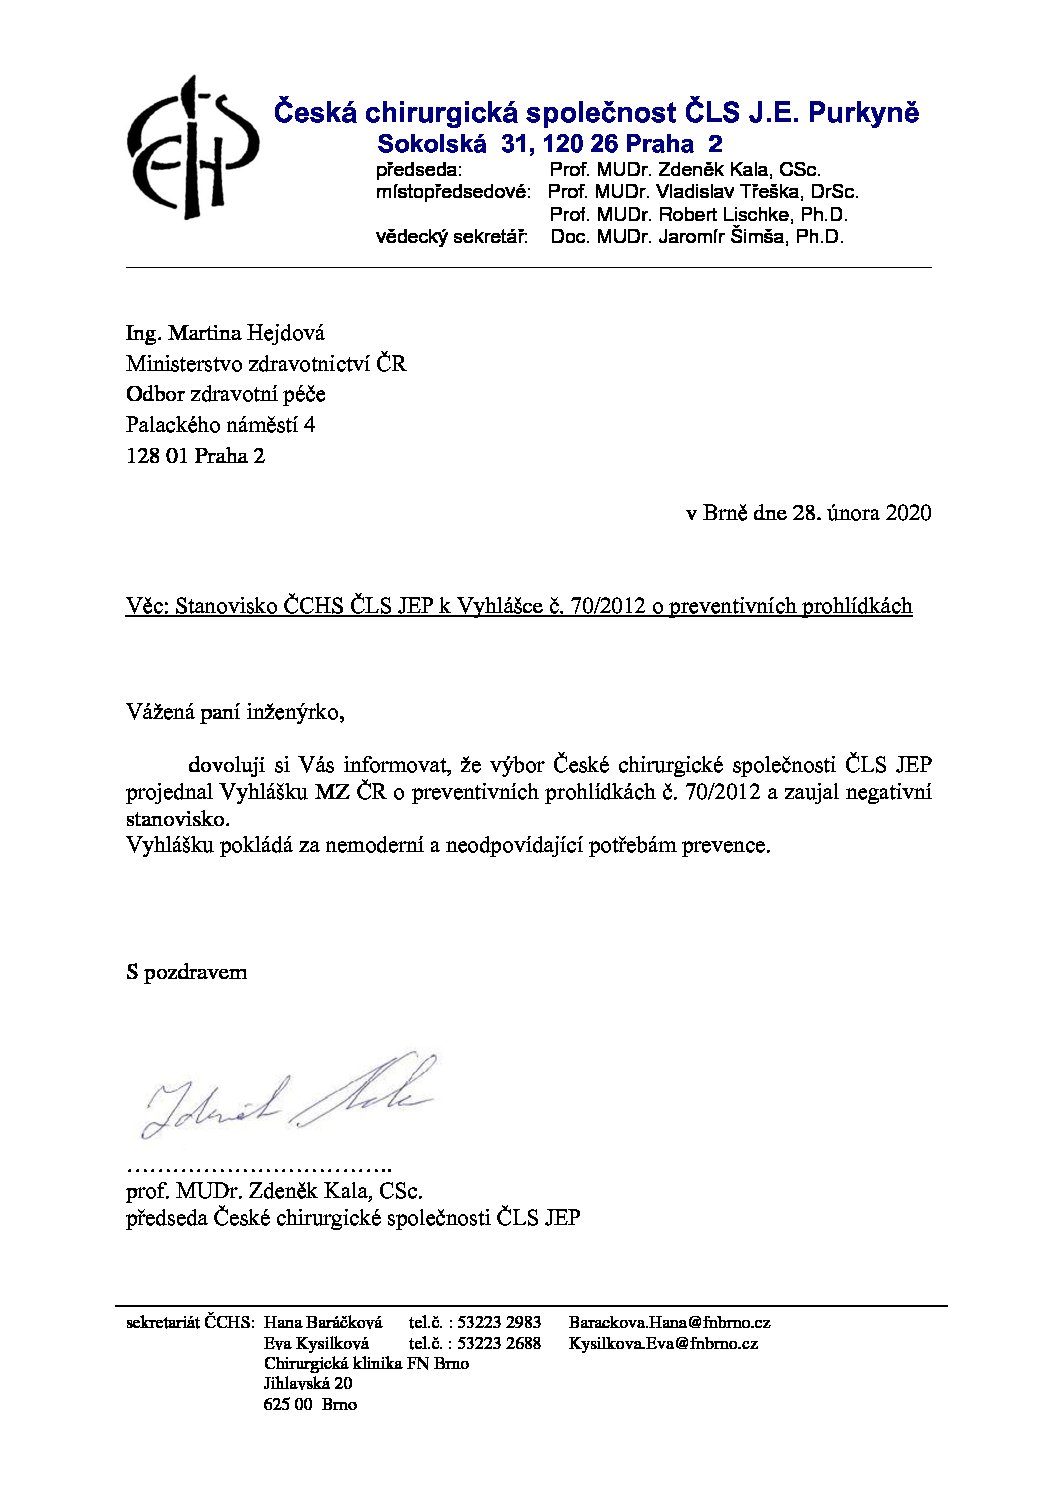 Stanovisko výboru ČCHS ČLS JEP k Vyhlášce č. 70_2012 o preventivních prohlídkách (28. 2. 2020)